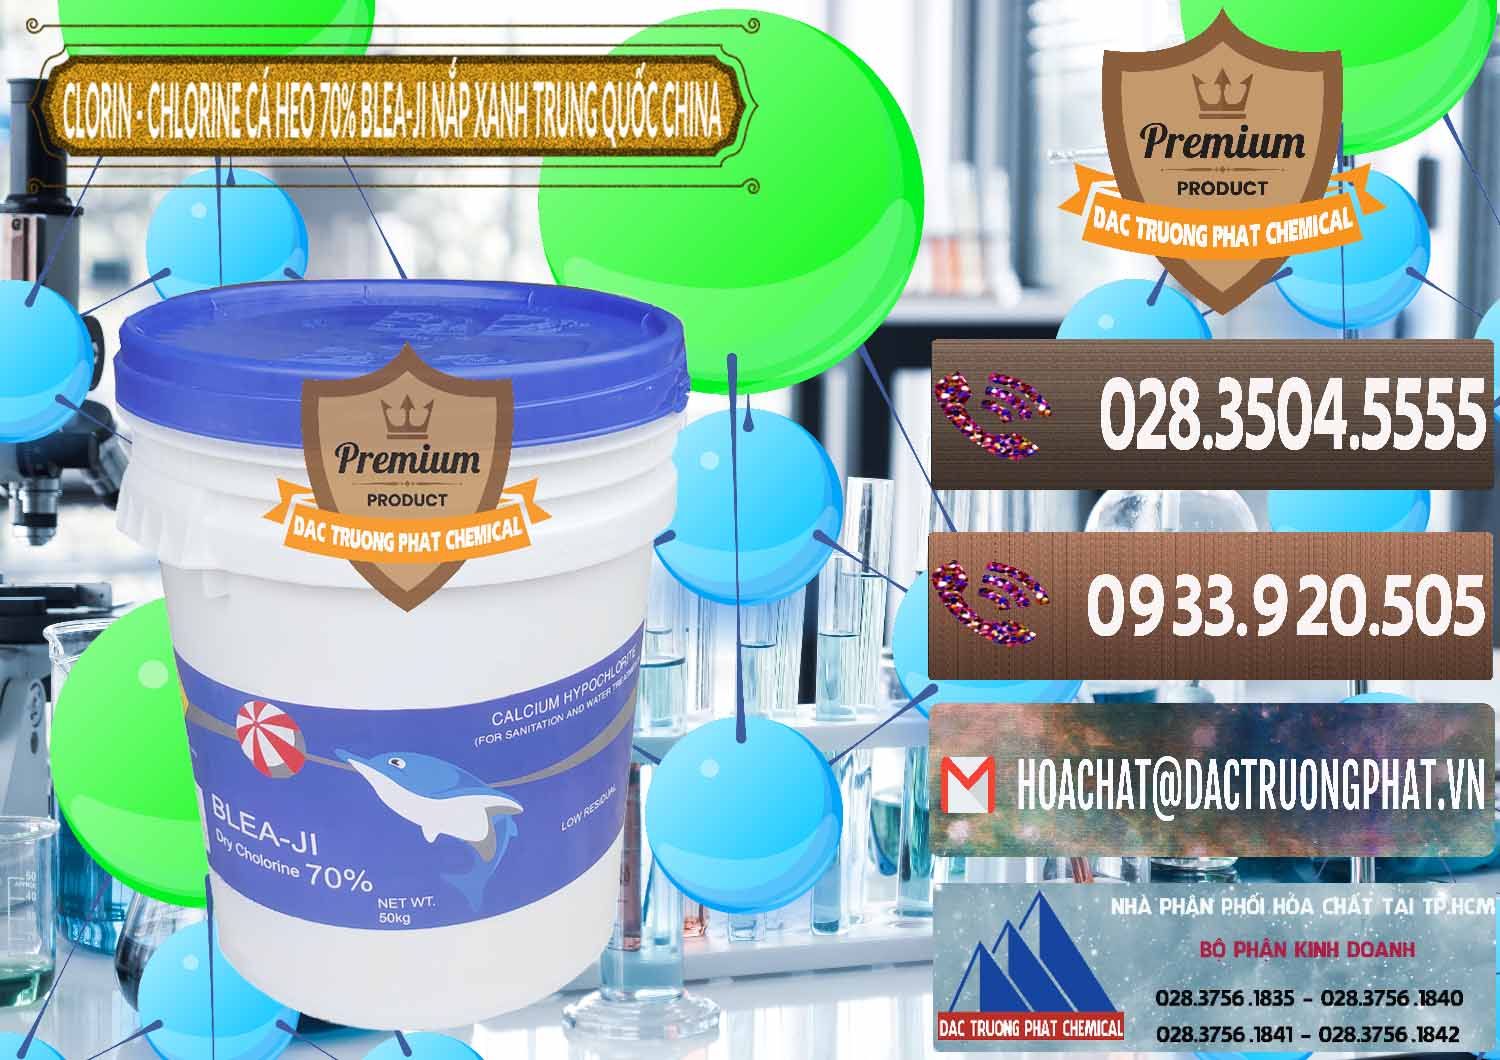 Kinh doanh ( bán ) Clorin - Chlorine Cá Heo 70% Cá Heo Blea-Ji Thùng Tròn Nắp Xanh Trung Quốc China - 0208 - Chuyên cung cấp _ phân phối hóa chất tại TP.HCM - hoachatviet.net